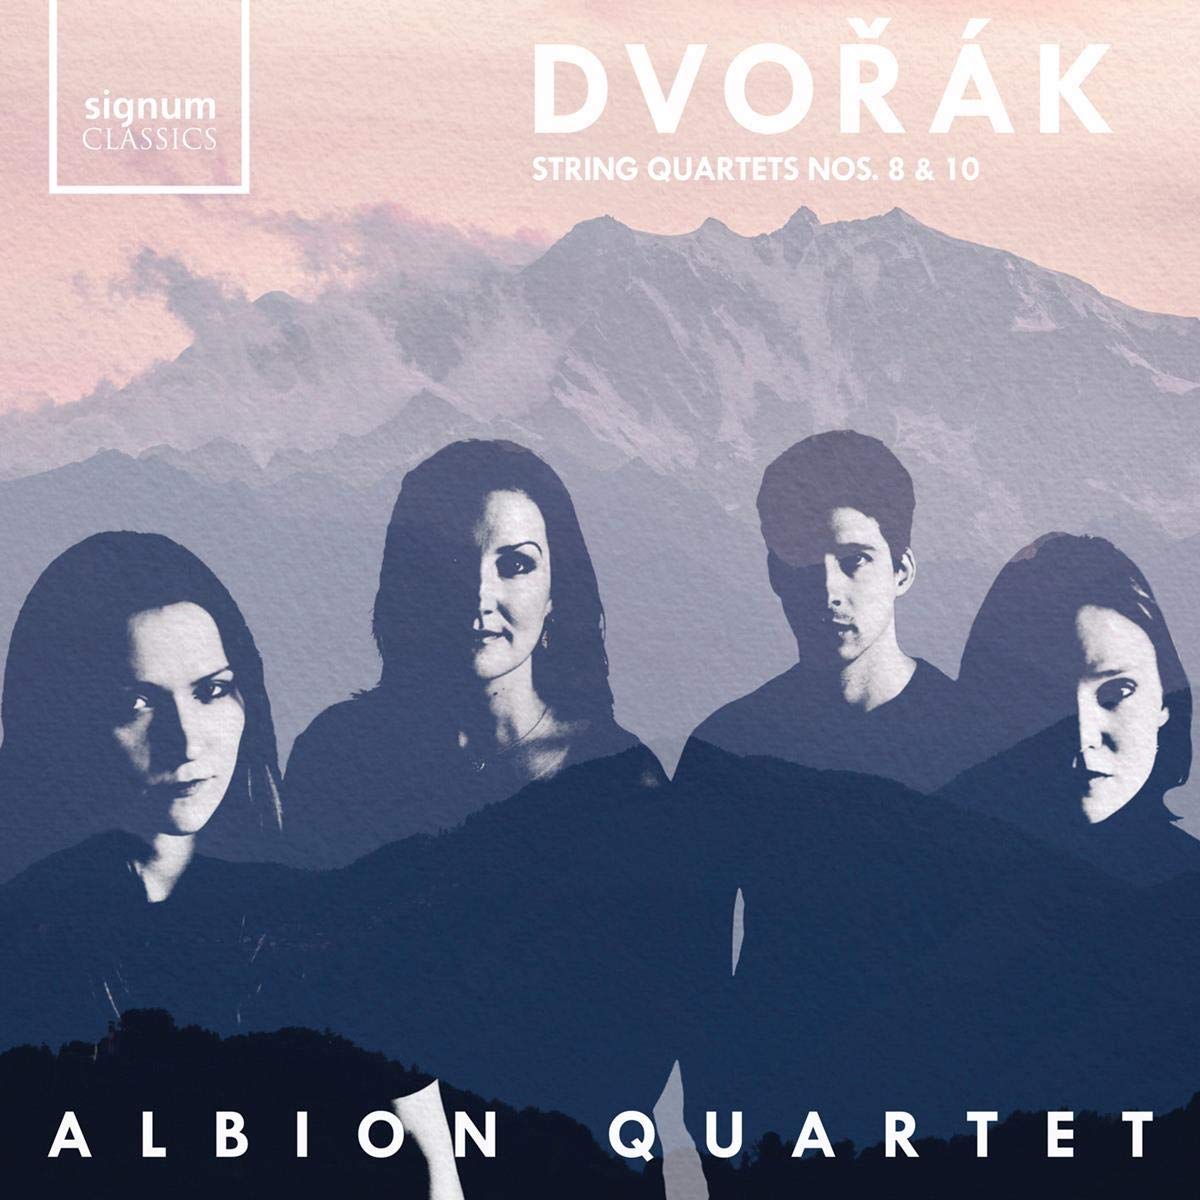 SIGCD597. DVORÁK String Quartets Nos 8 & 10 (Albion Quartet)